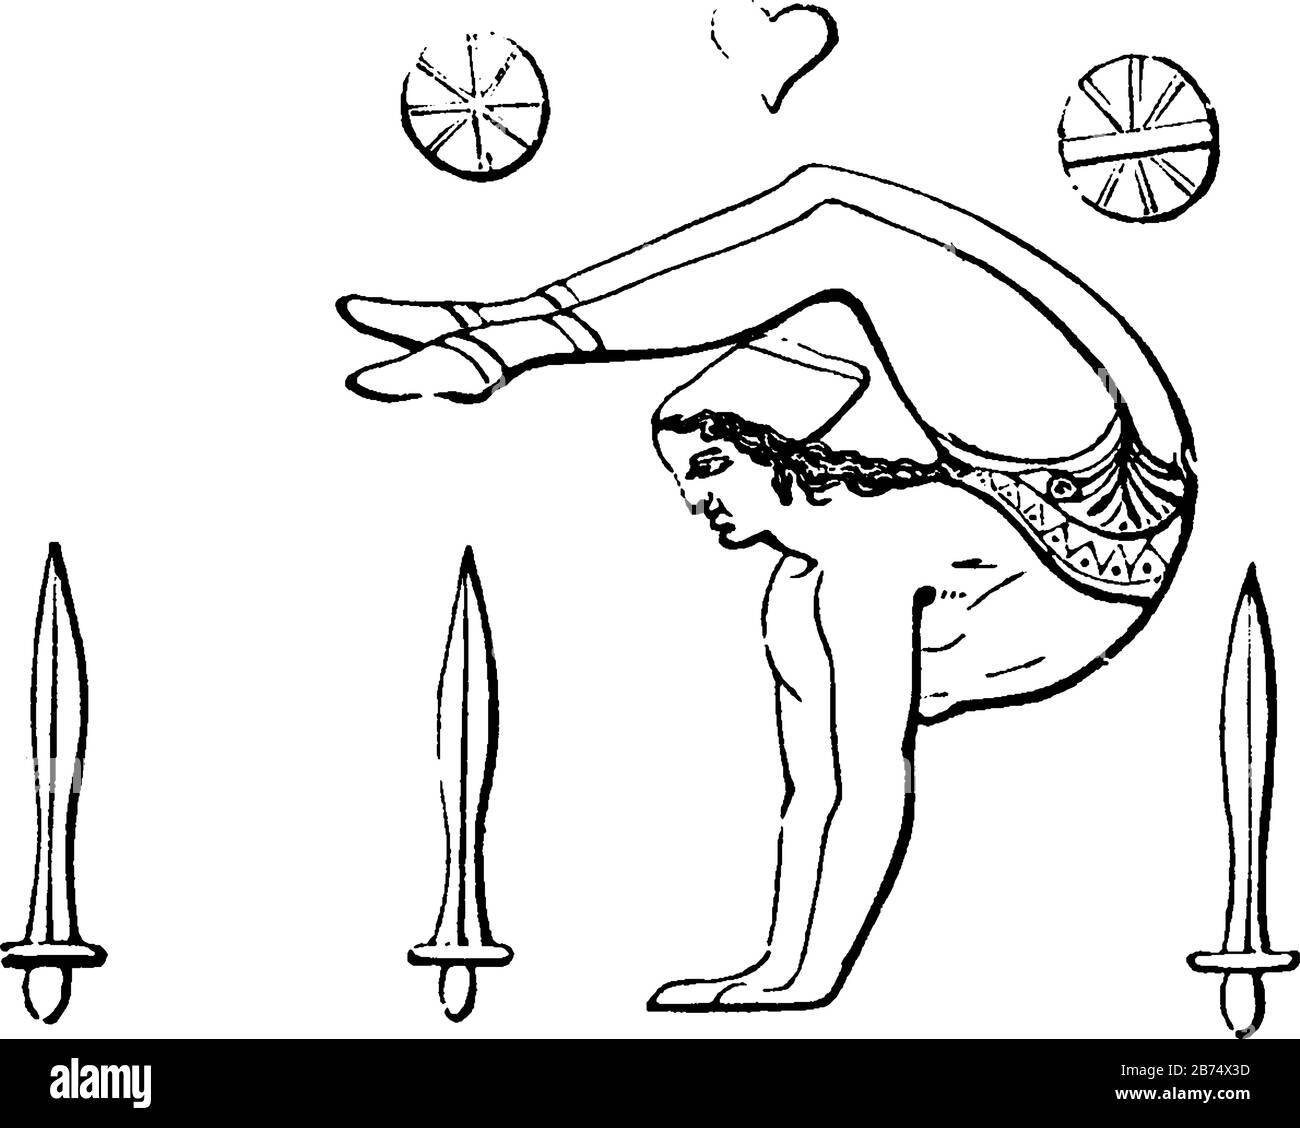 Salatio inteso a rappresentare l'attività fisica e applicato per designare gesti quando il corpo non si muoveva e strettamente connesso con la religione, Illustrazione Vettoriale